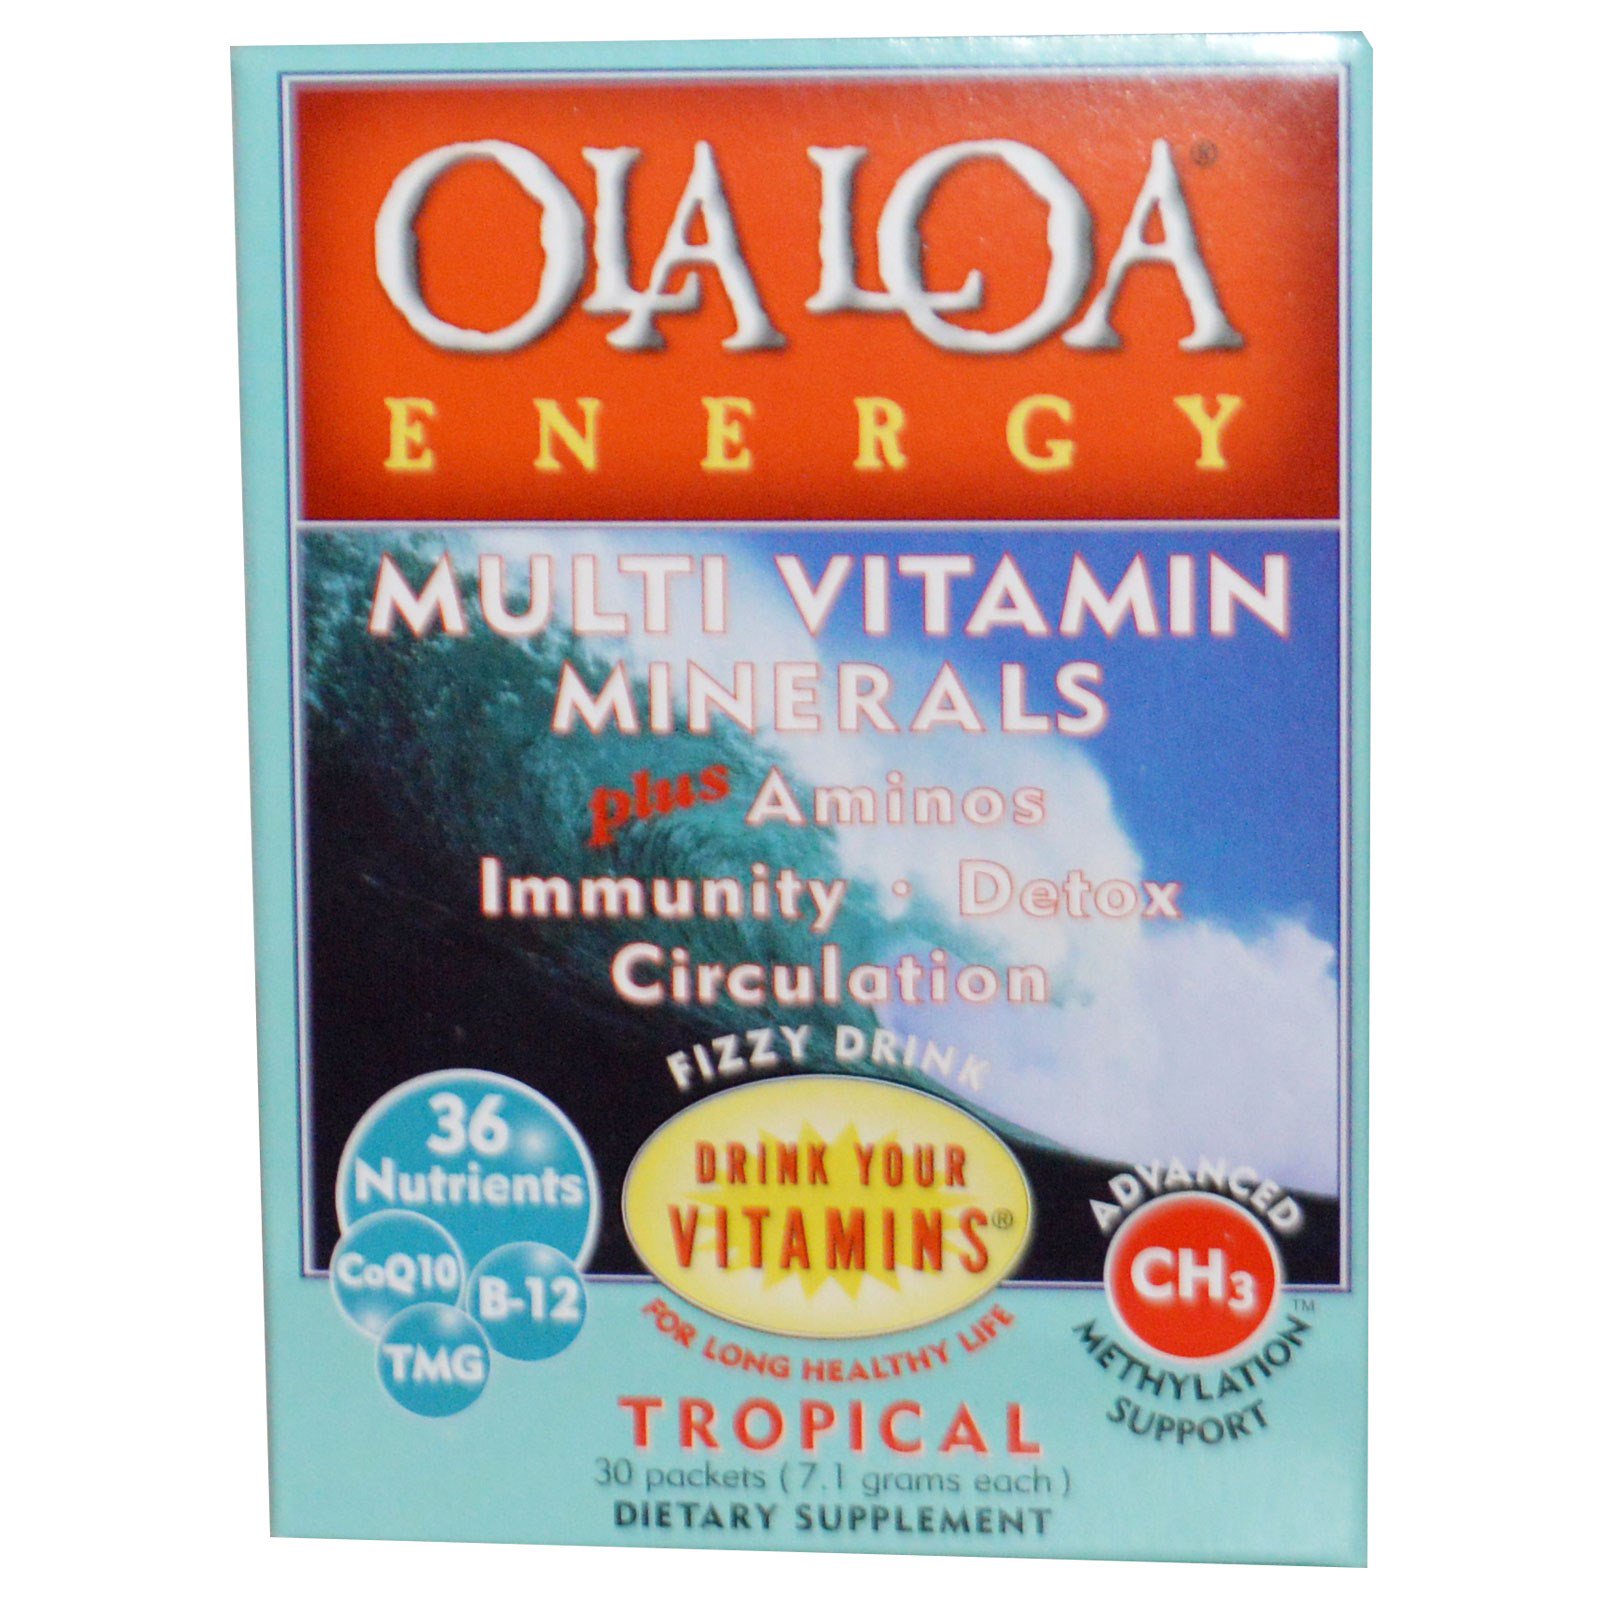 Ola Loa, Мульти витамины и минералы для энергии с тропическим вкусом, 30 пакетов, (7.1 г) каждый